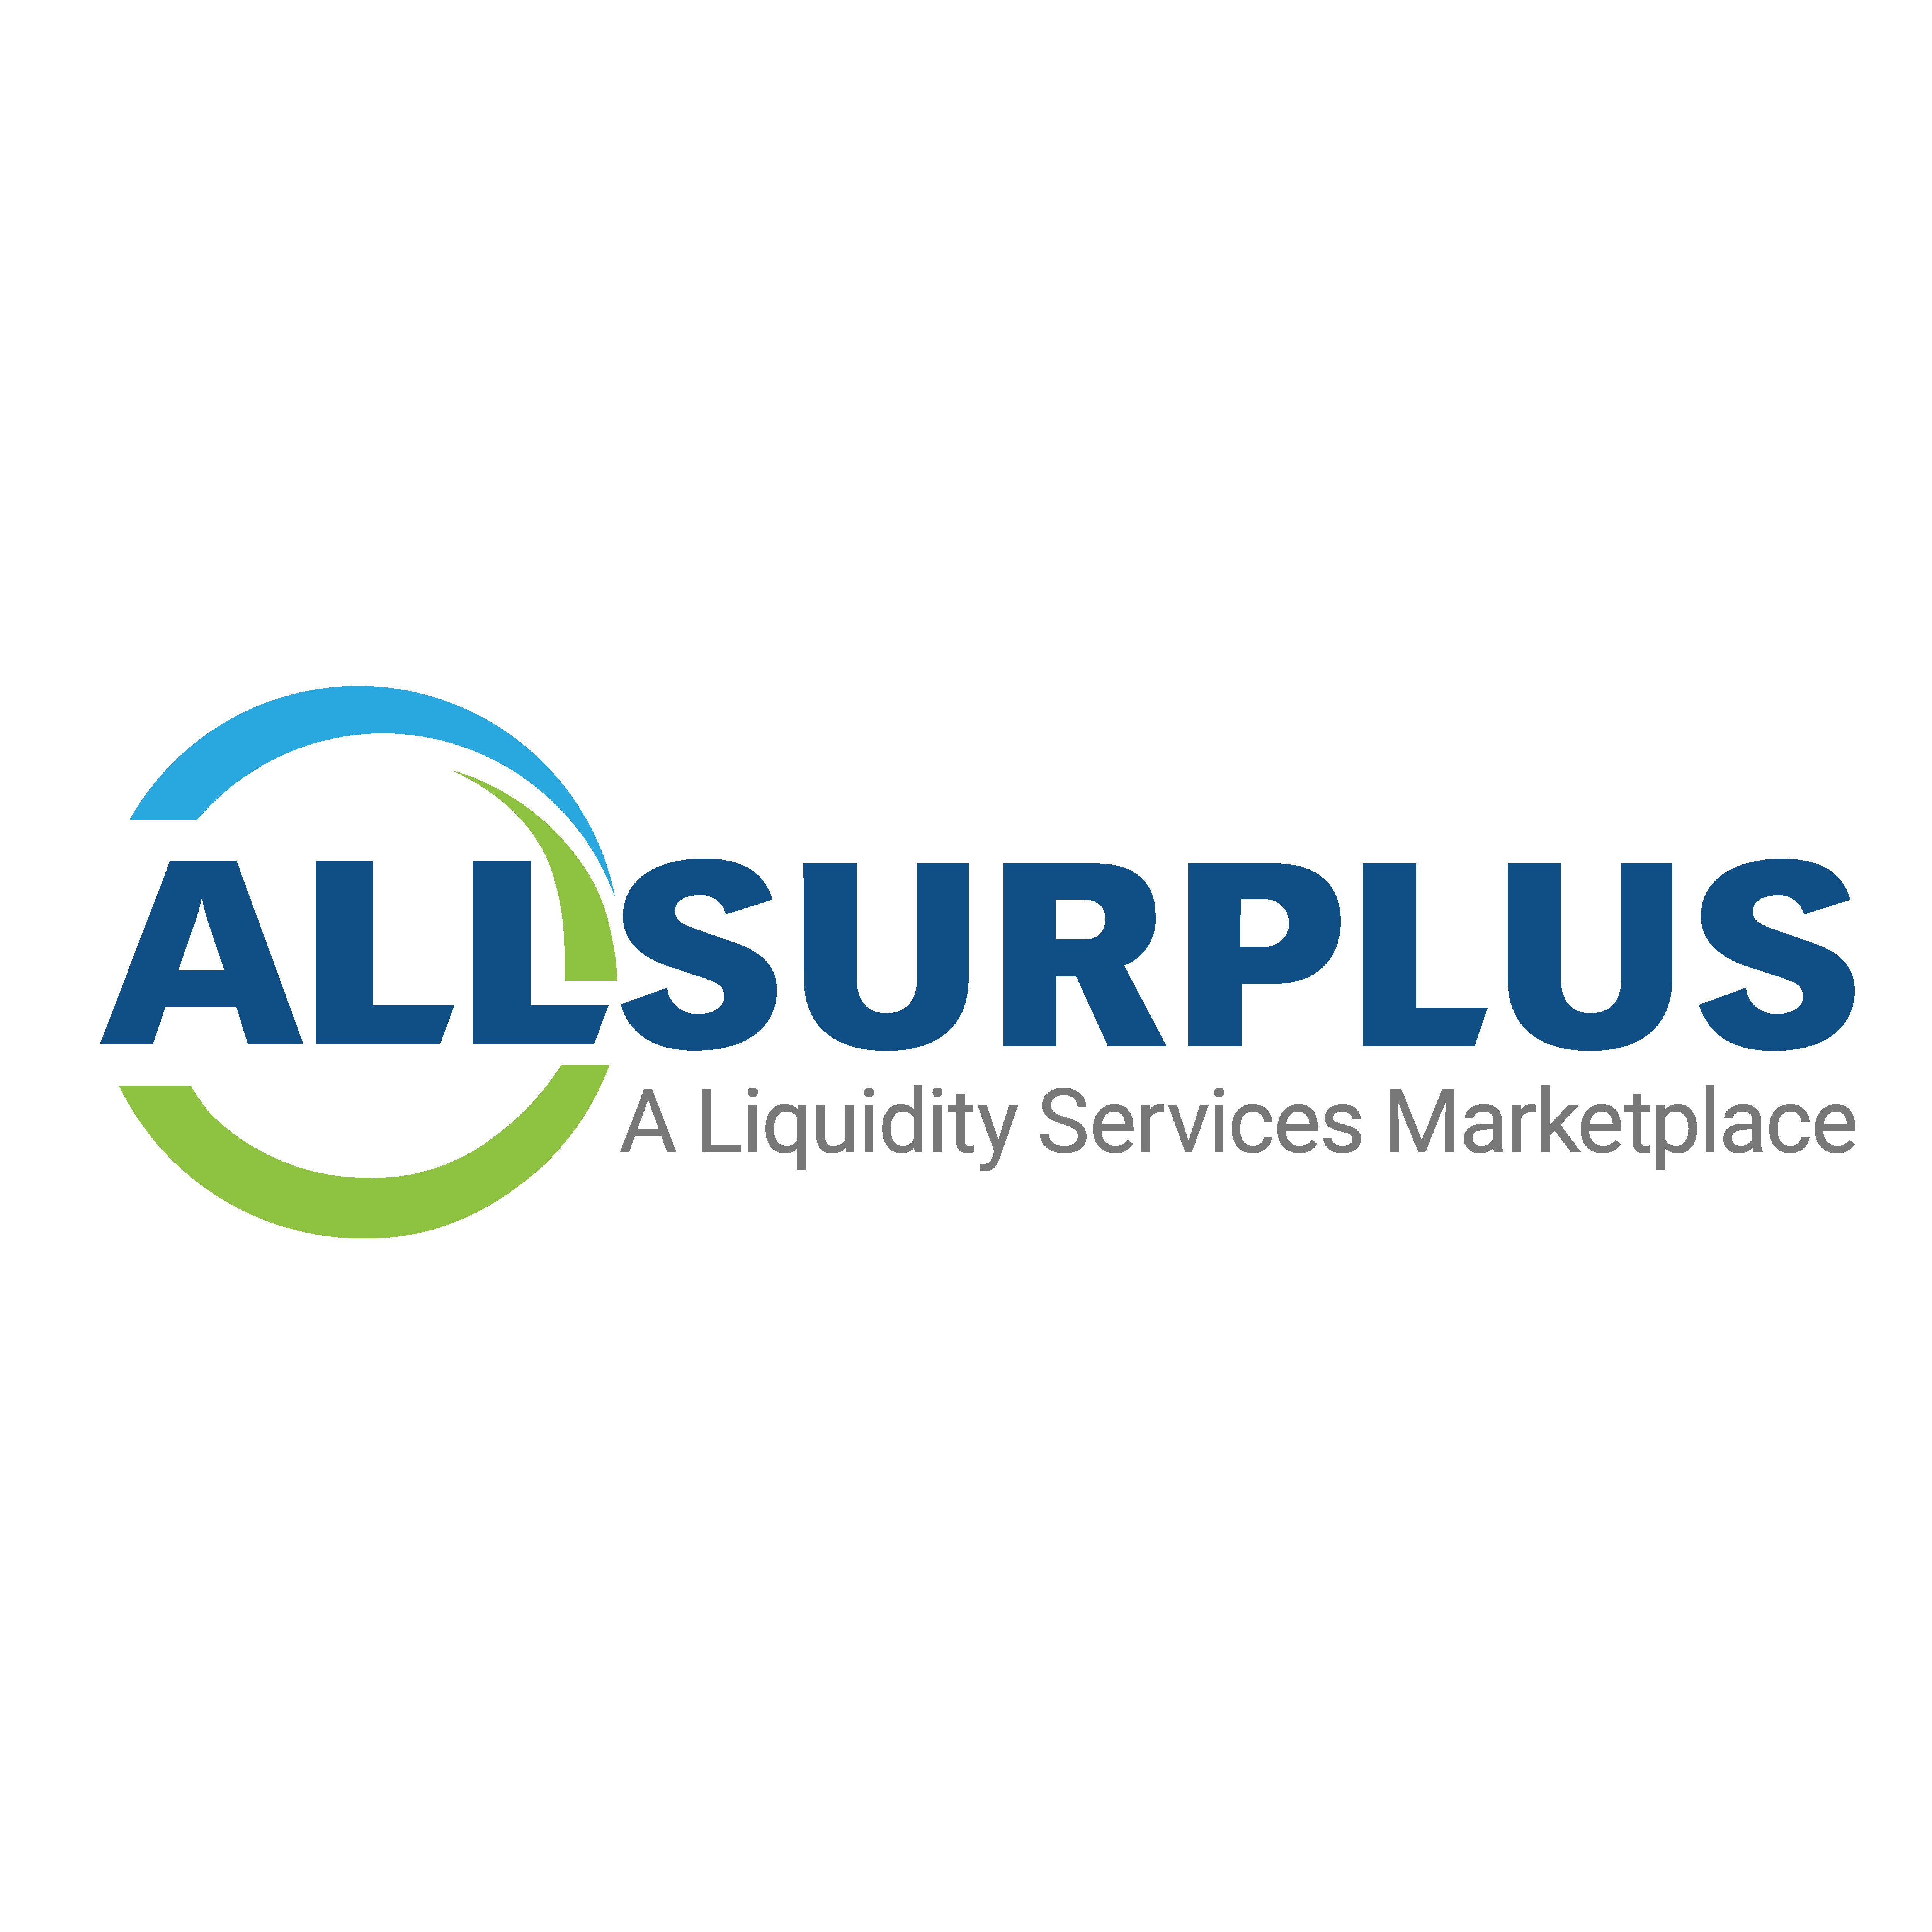 AllSurplus – A Liquidity Services Marketplace company logo